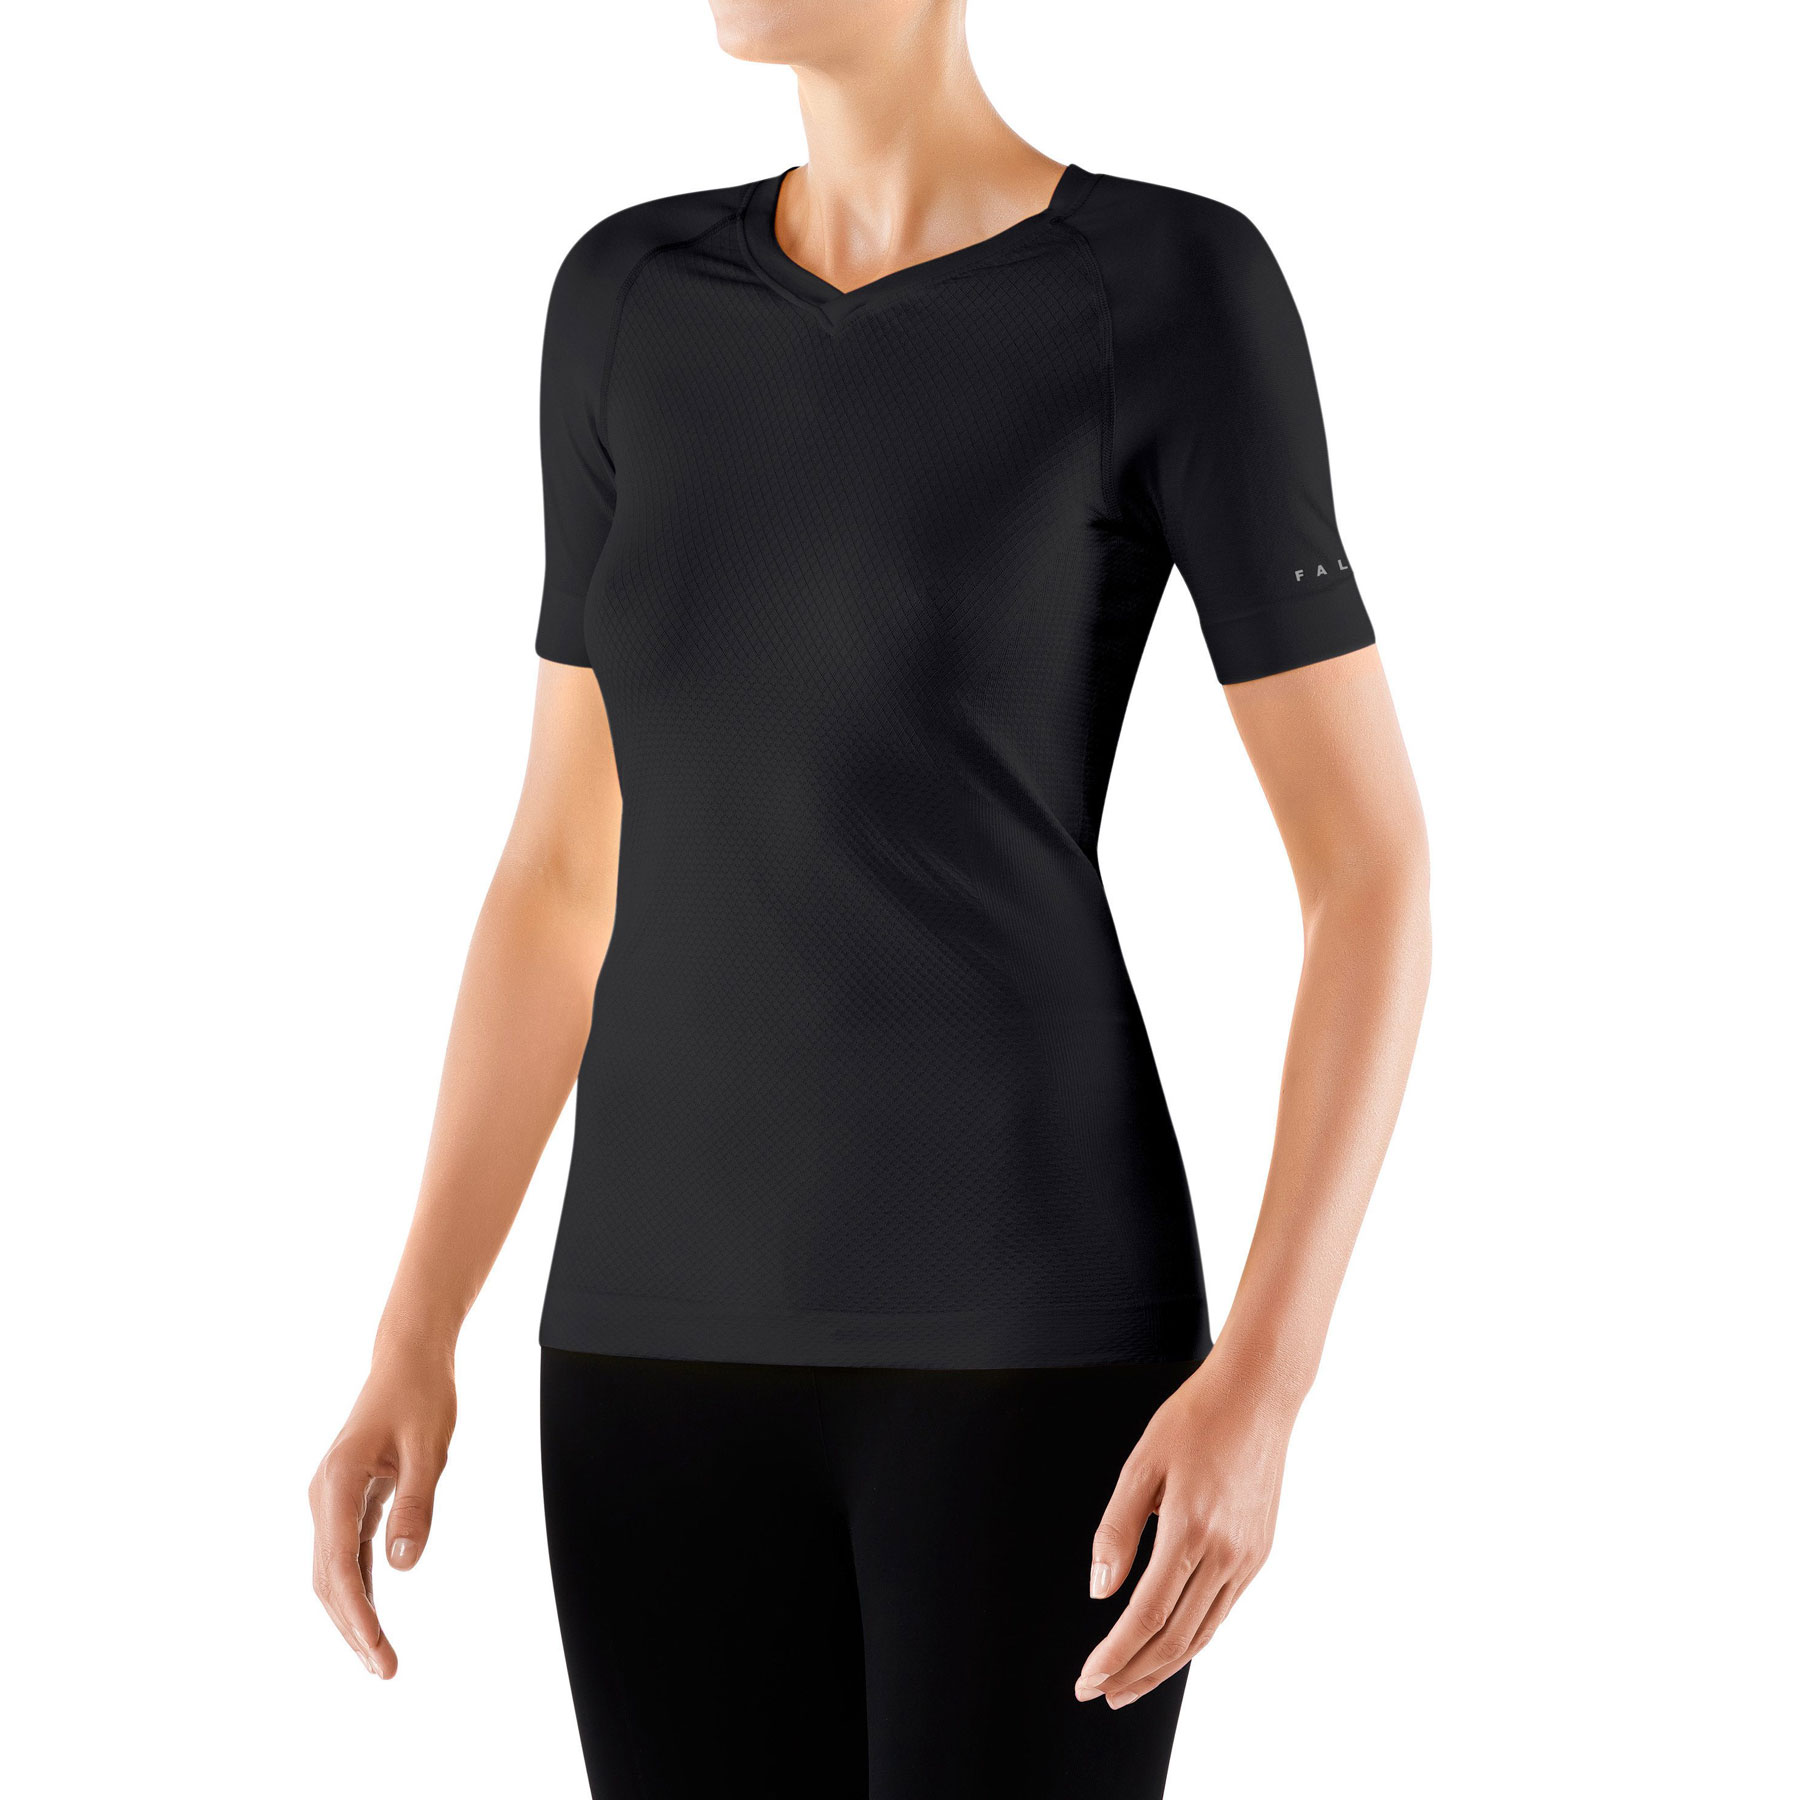 Produktbild von Falke Cool T-Shirt Damen - schwarz 3000